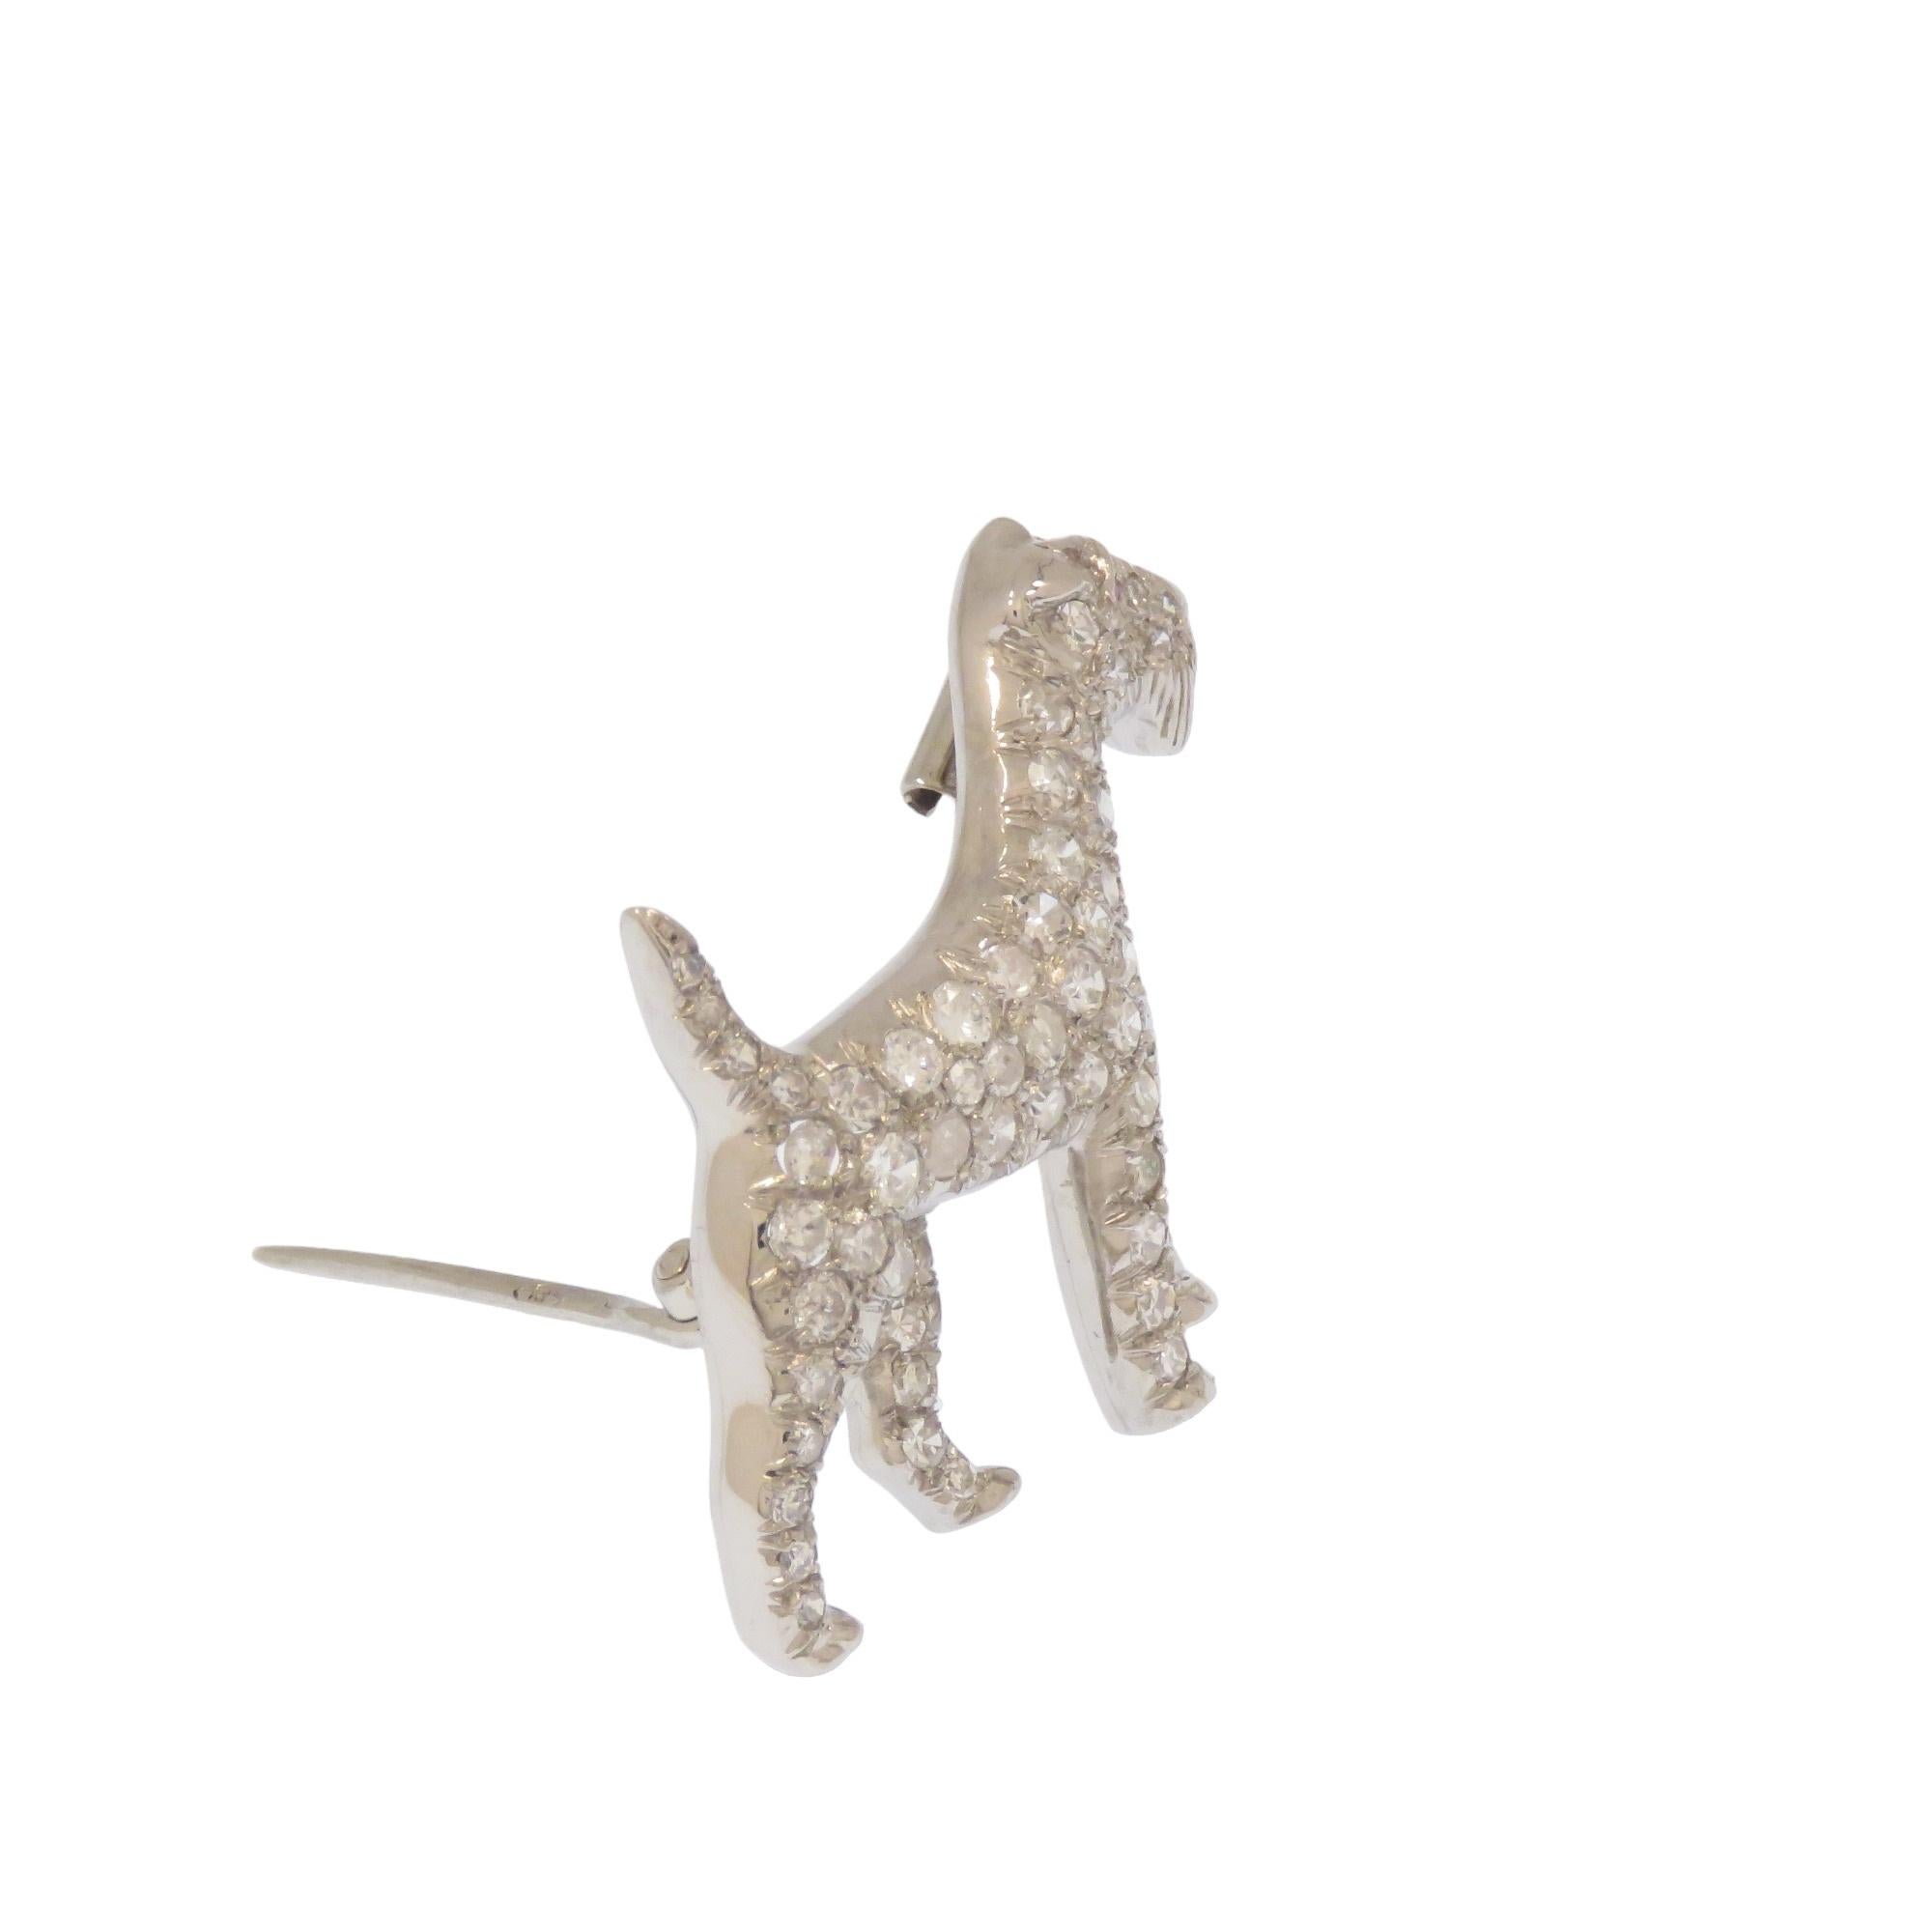 Adorabile spilla di cane Airedale lavorata a mano in platino con incastonati su tutto il corpo 60 diamanti di 1.5 carati circa. Prodotta da esperti orafi nel 1970 circa. La spilla ha sul retro un supporto con perno a cerniera e chiusura a pressione.